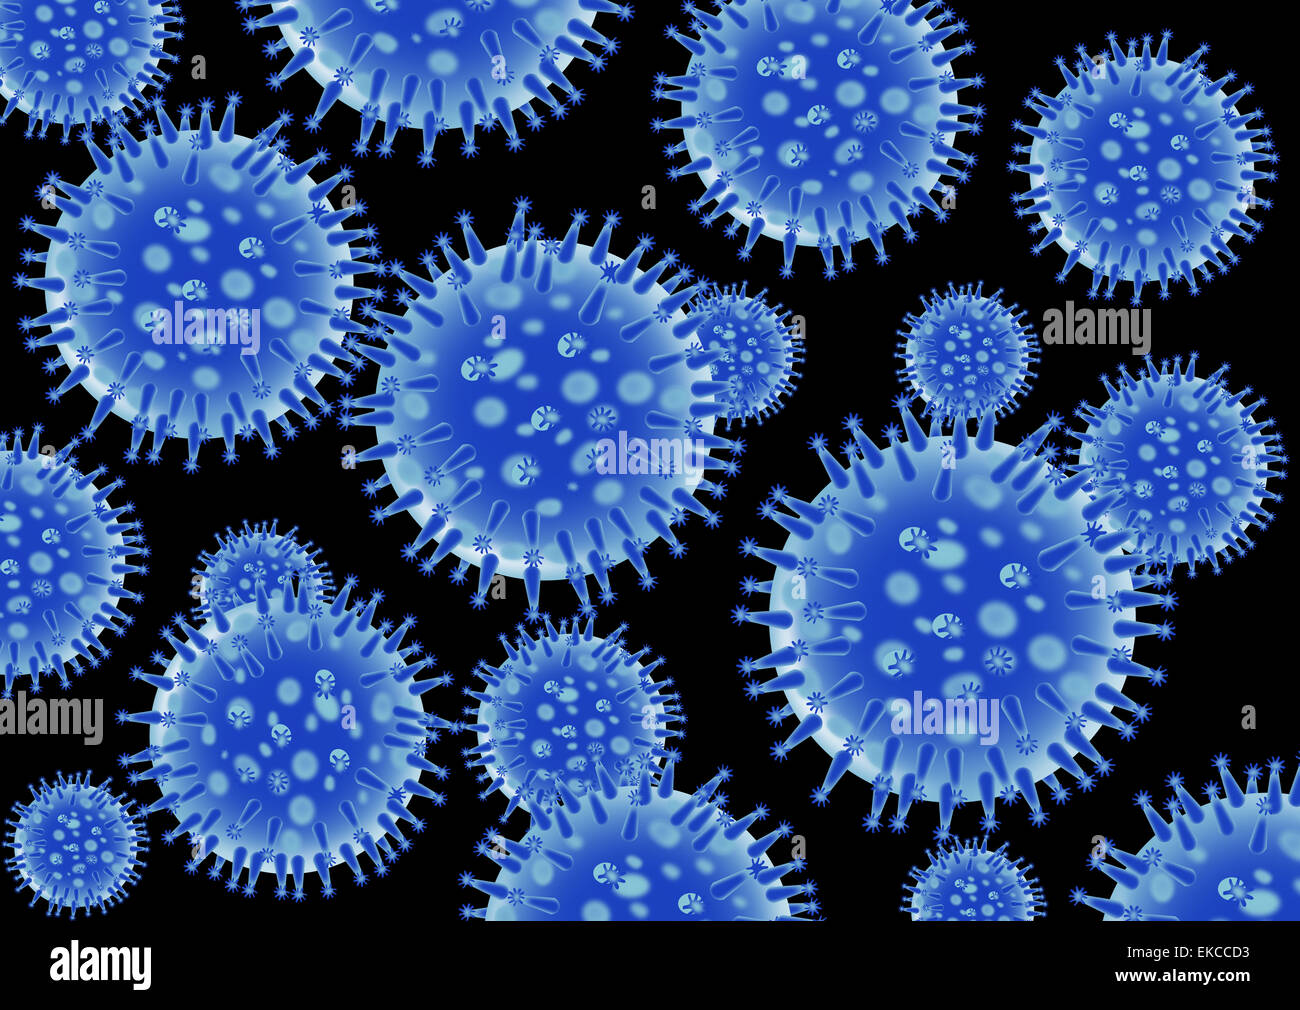 Flu virus structure Stock Photo